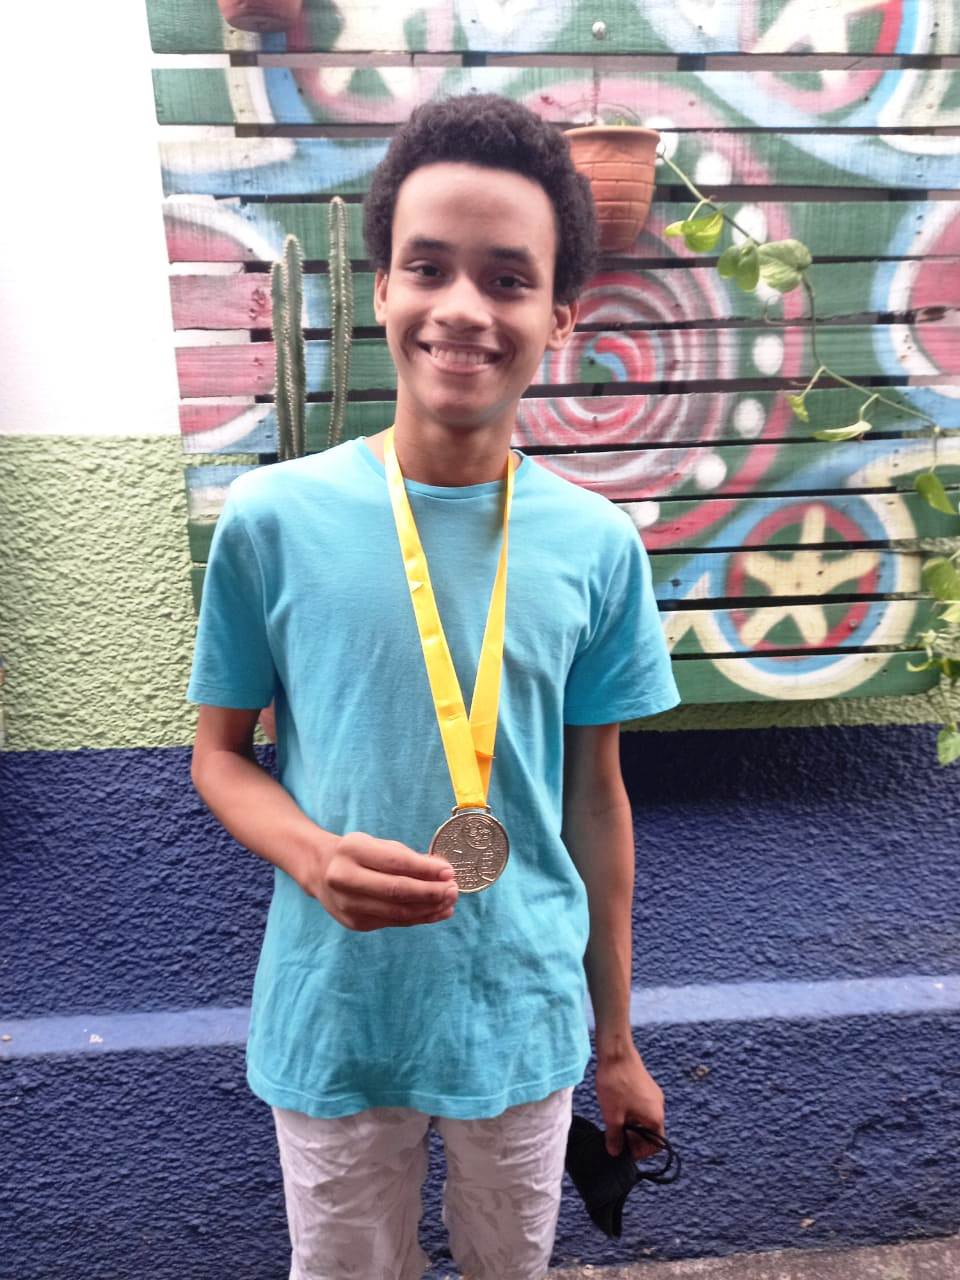 Aluno da rede municipal de Teresina conquista medalha de ouro na OBF (Foto: Reprodução)